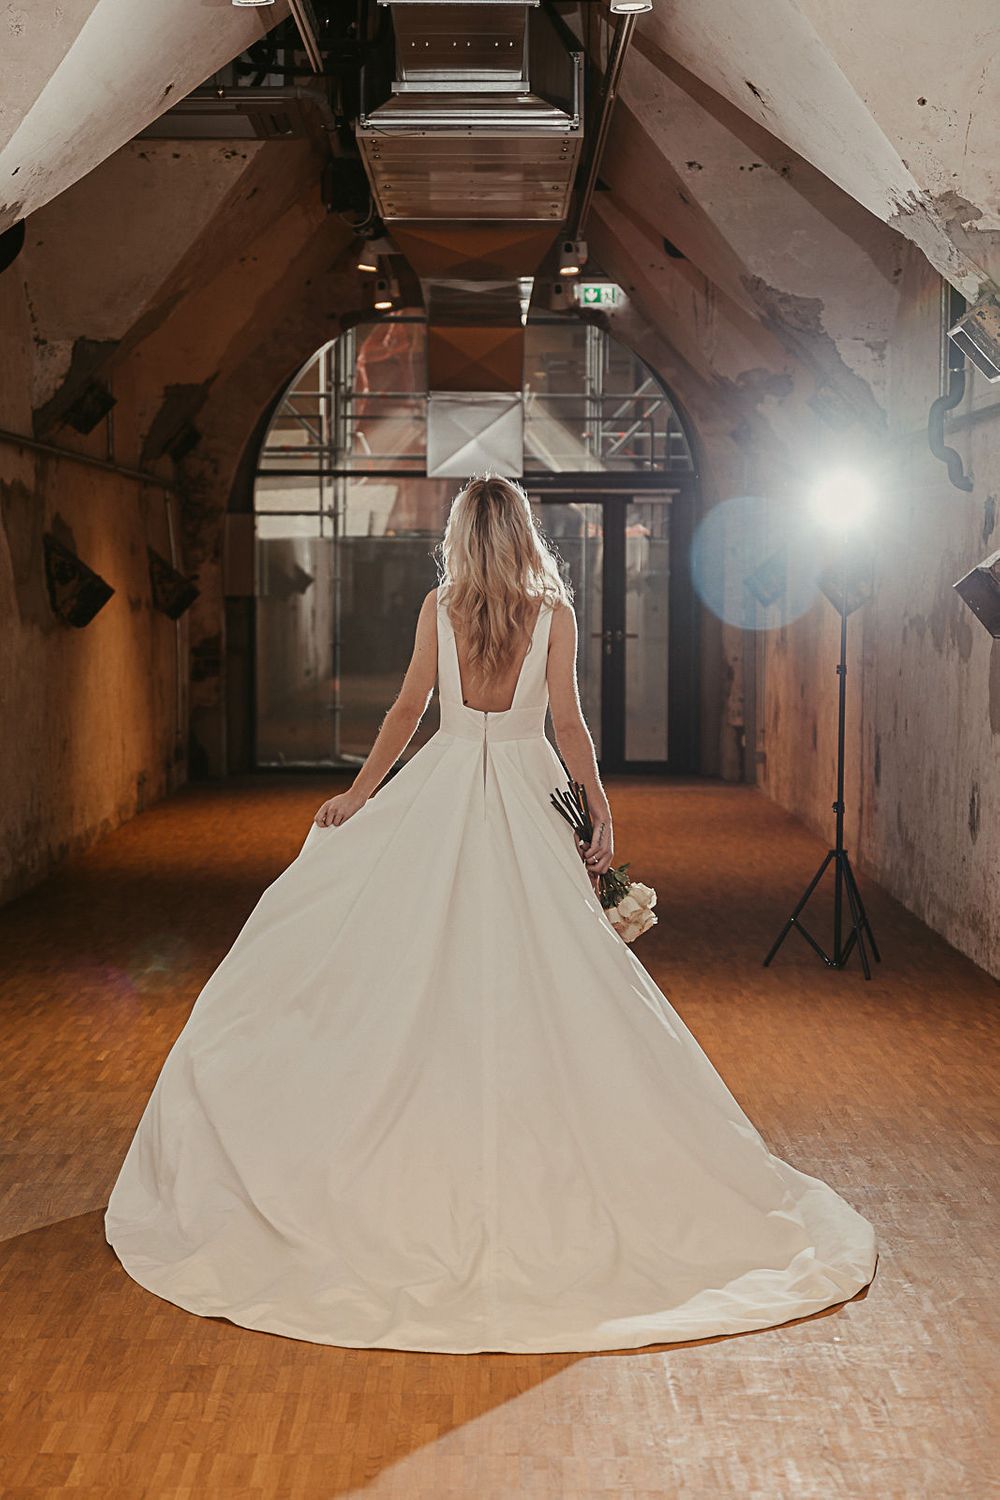 Eine Braut in einem Hochzeitskleid steht in einem dunklen Raum.